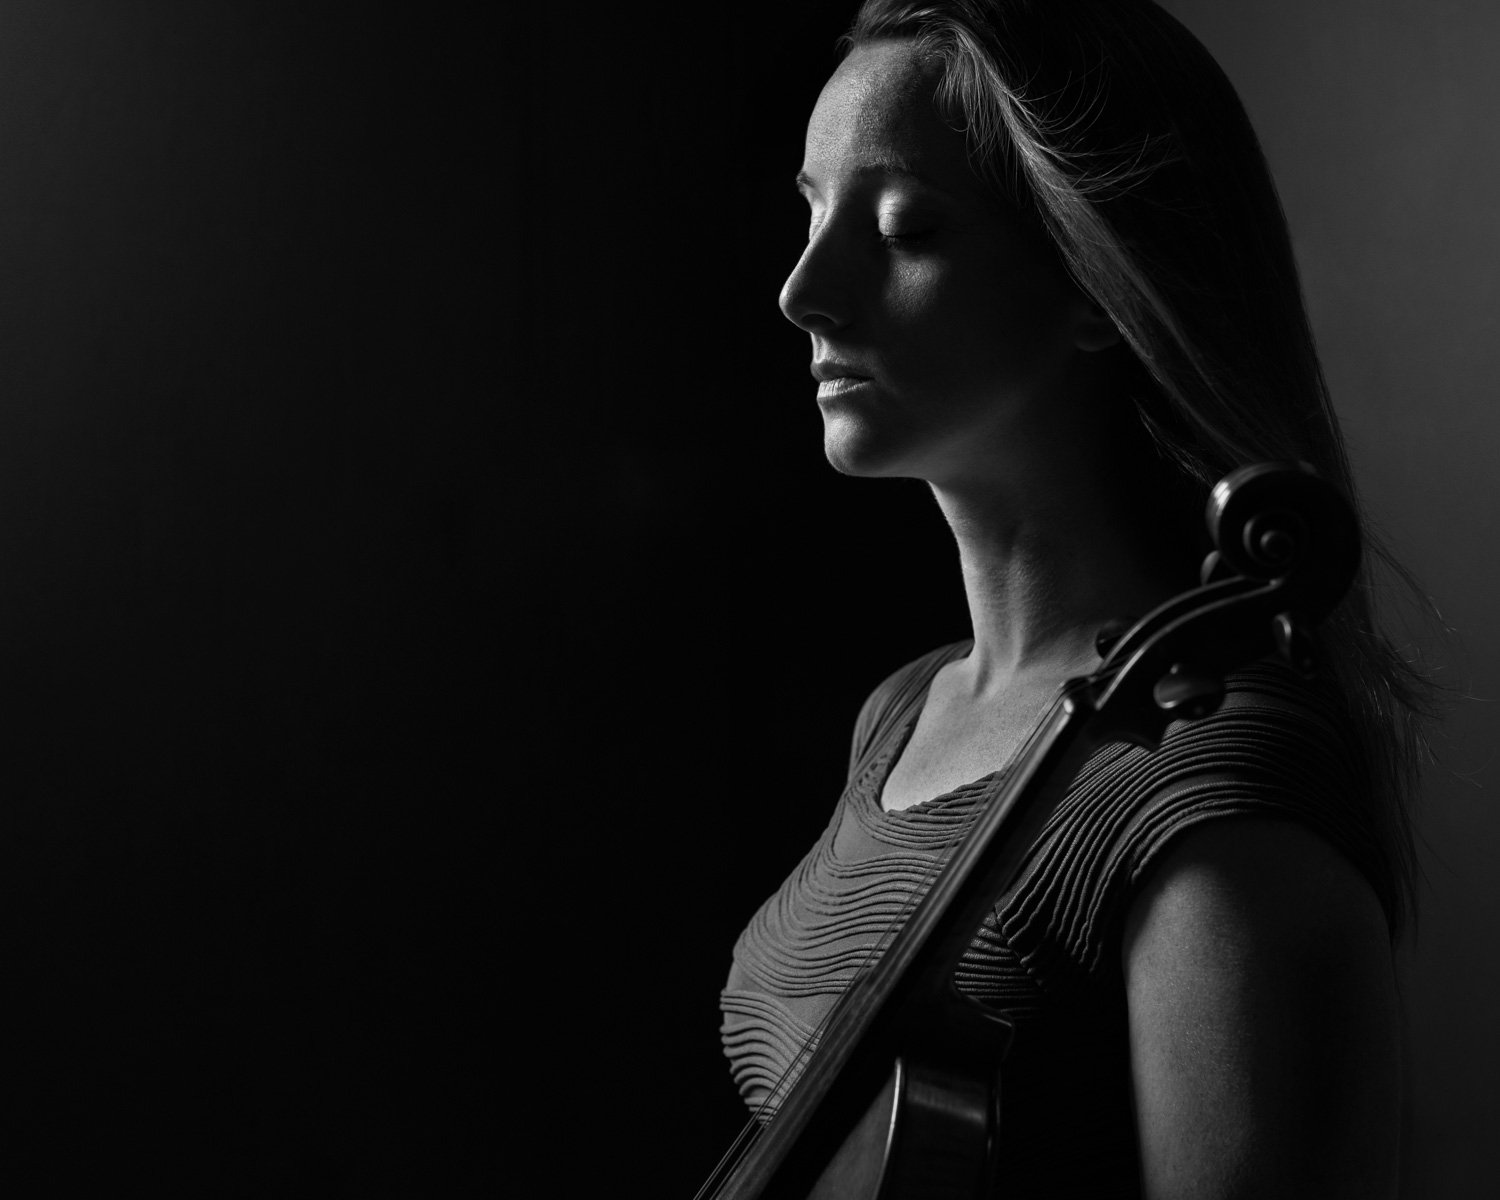 Violinist Jill Burch